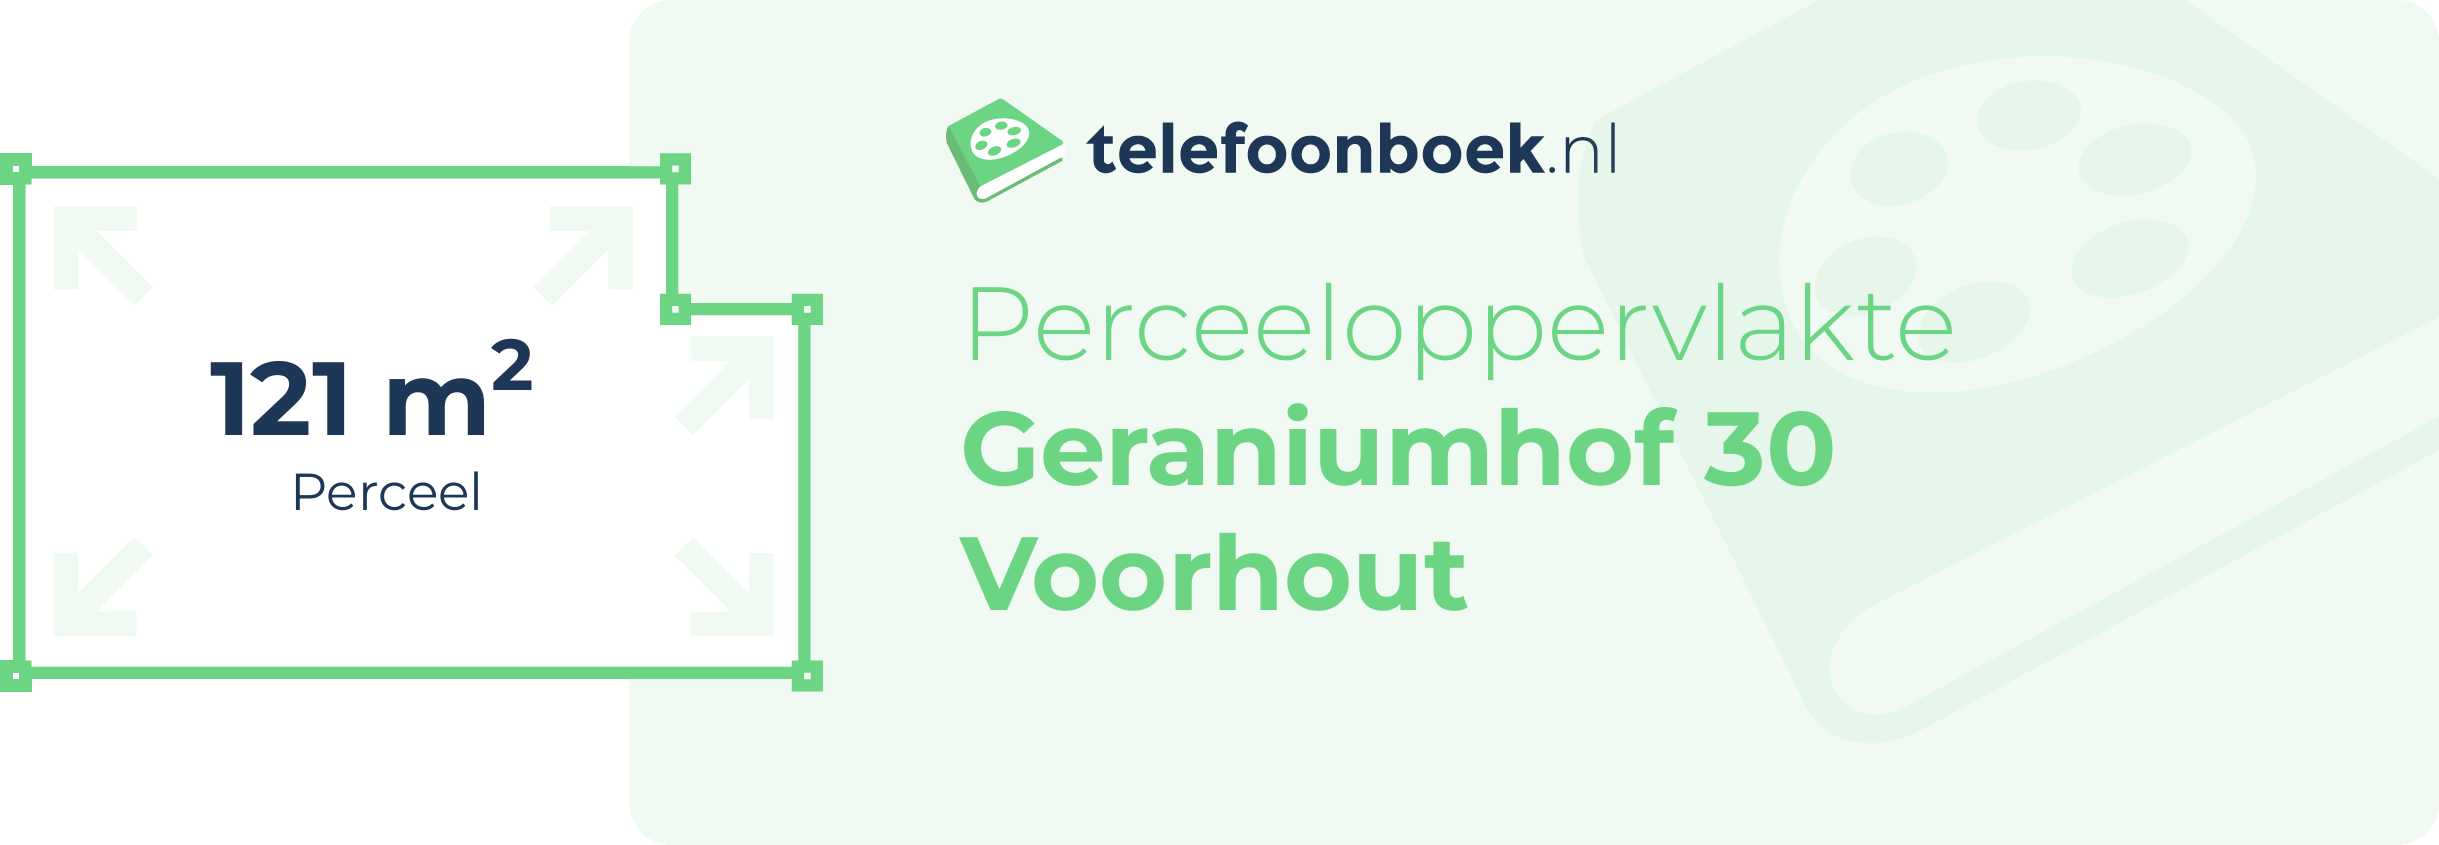 Perceeloppervlakte Geraniumhof 30 Voorhout